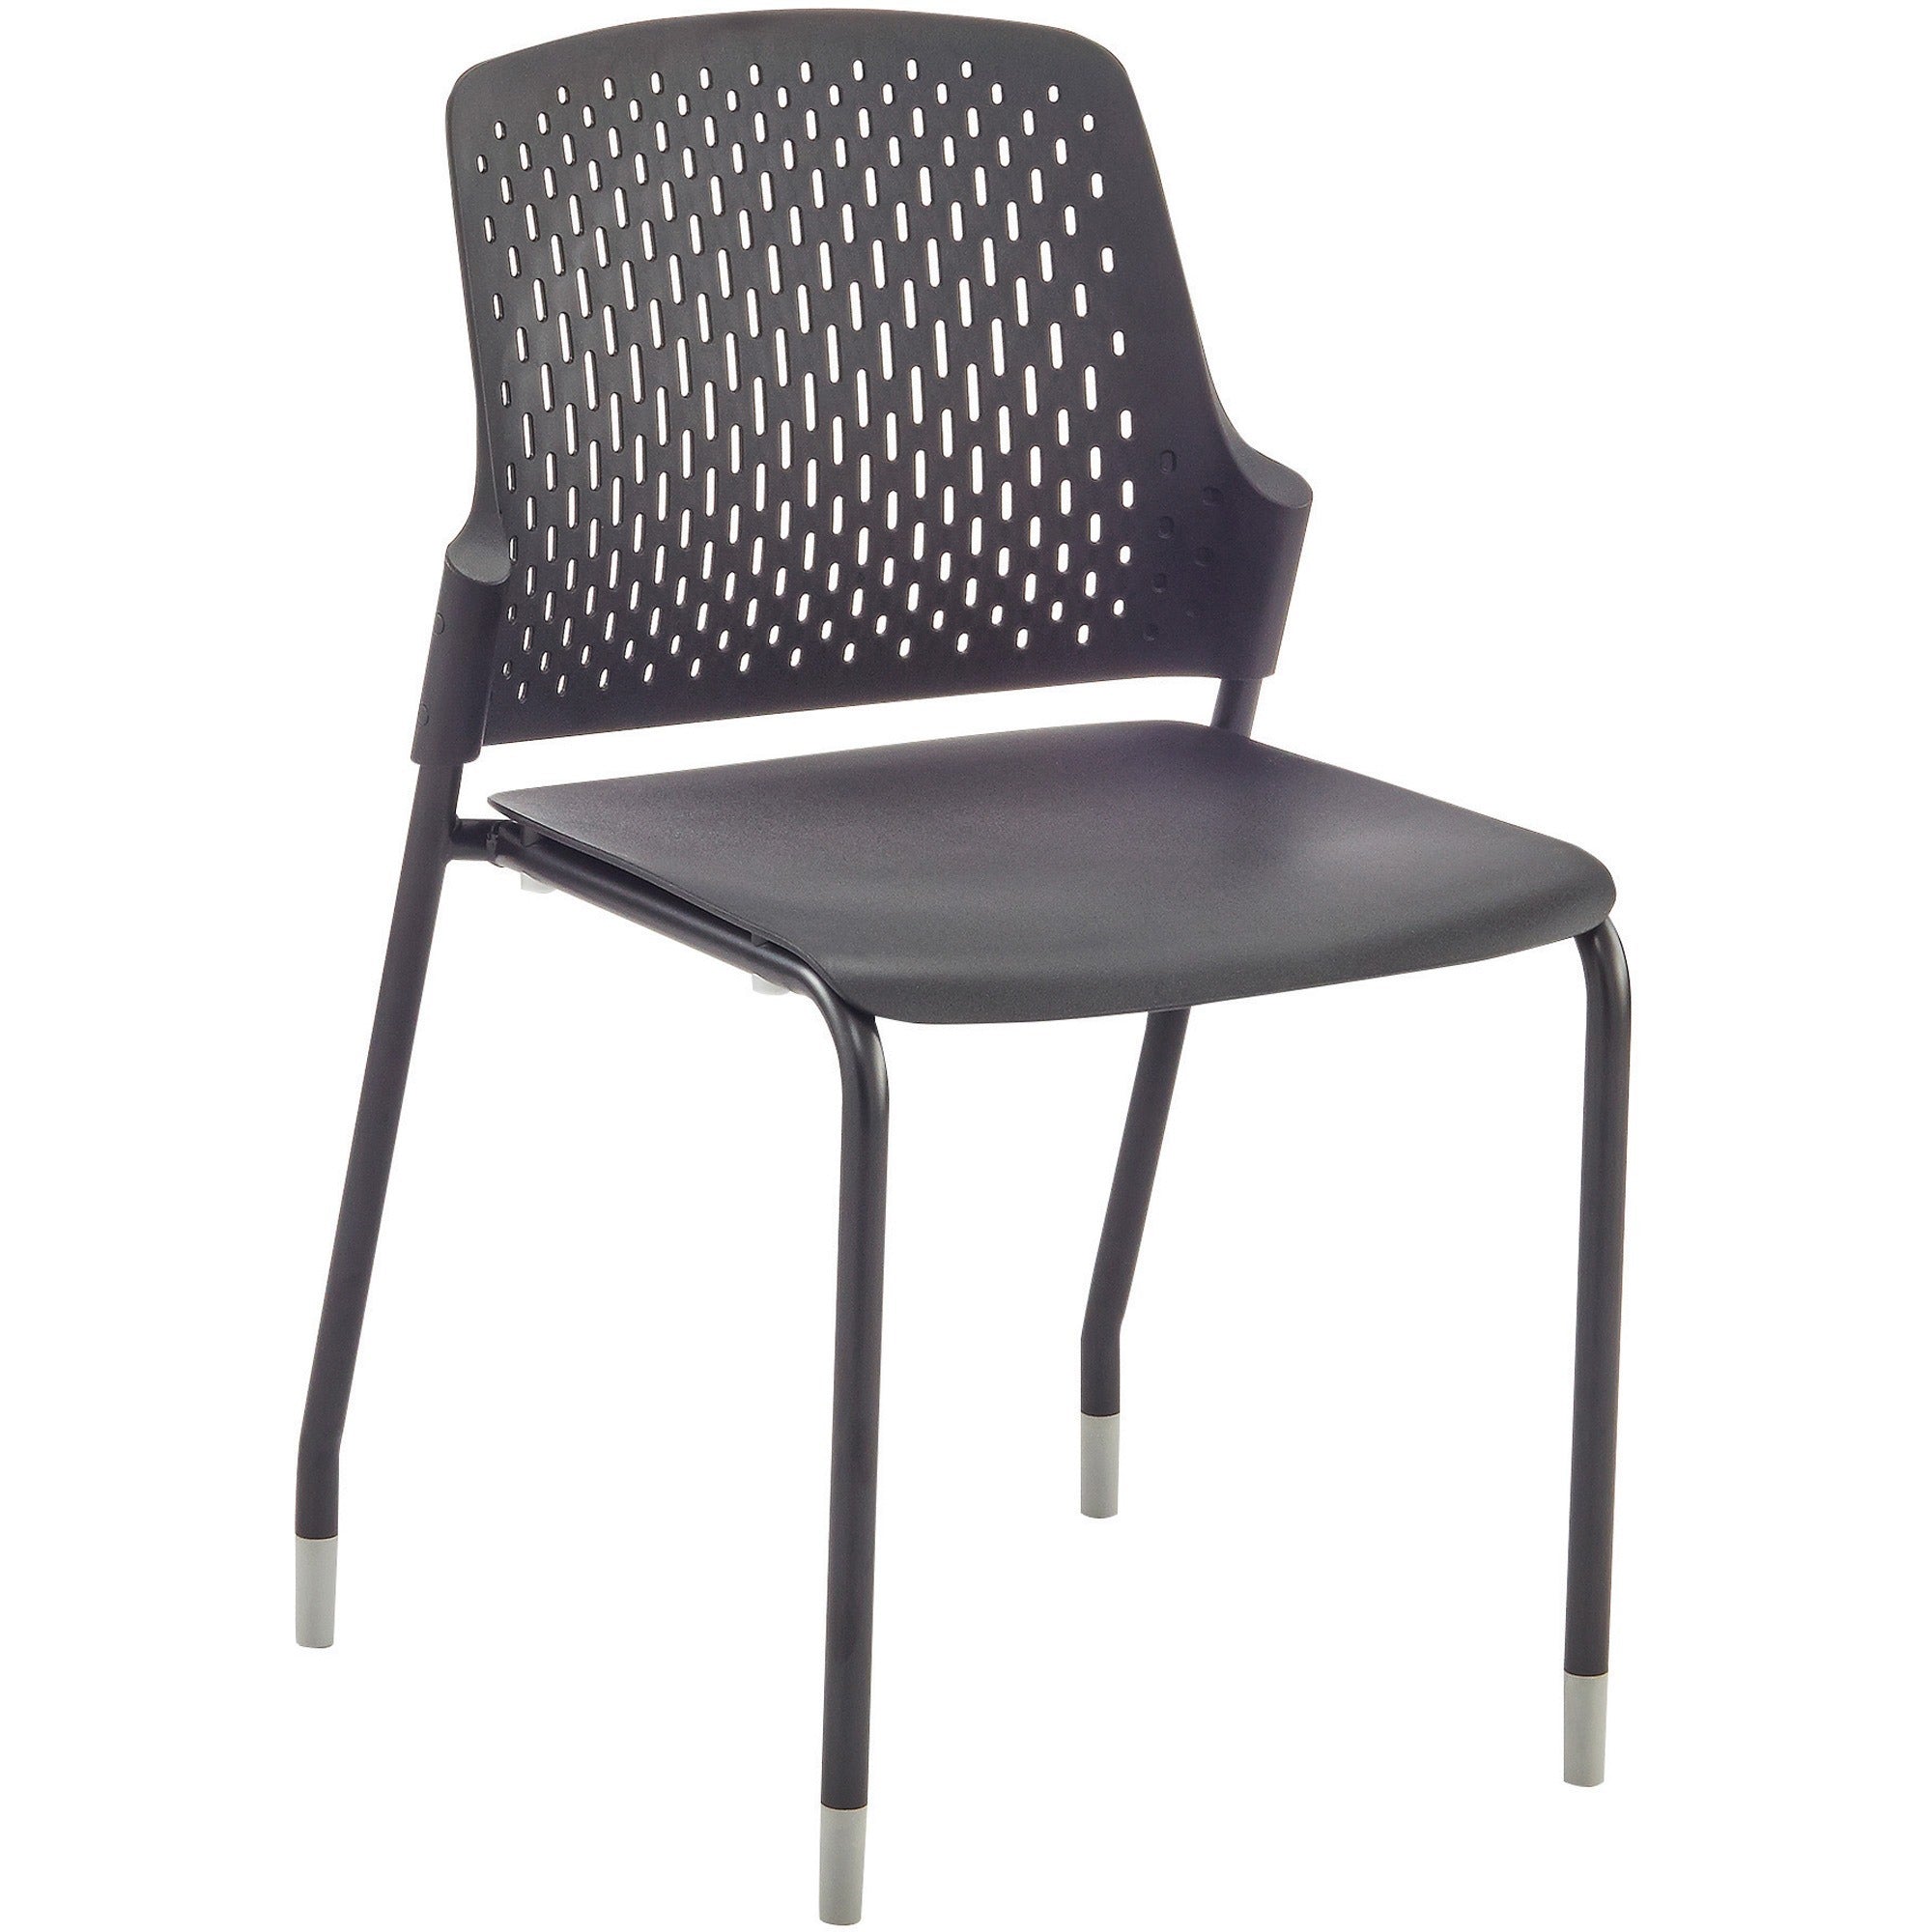 safco-next-stack-chair-black-polypropylene-seat-black-polypropylene-back-tubular-steel-frame-four-legged-base-4-carton_saf4287bl - 1